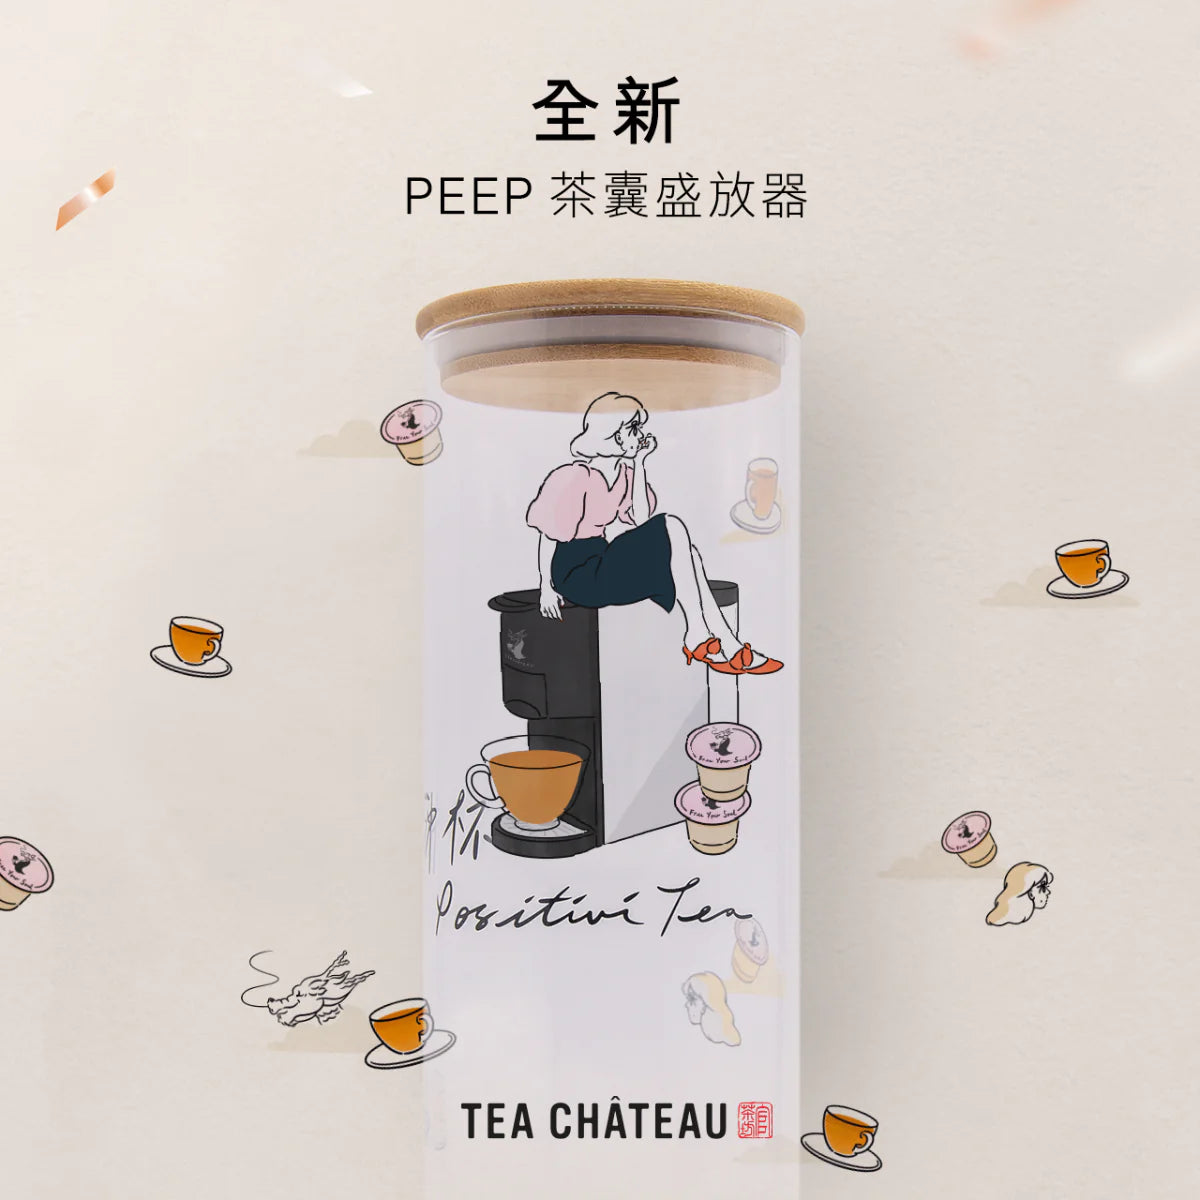 » PEEP聯乘設計玻璃茶囊瓶 (100% off)